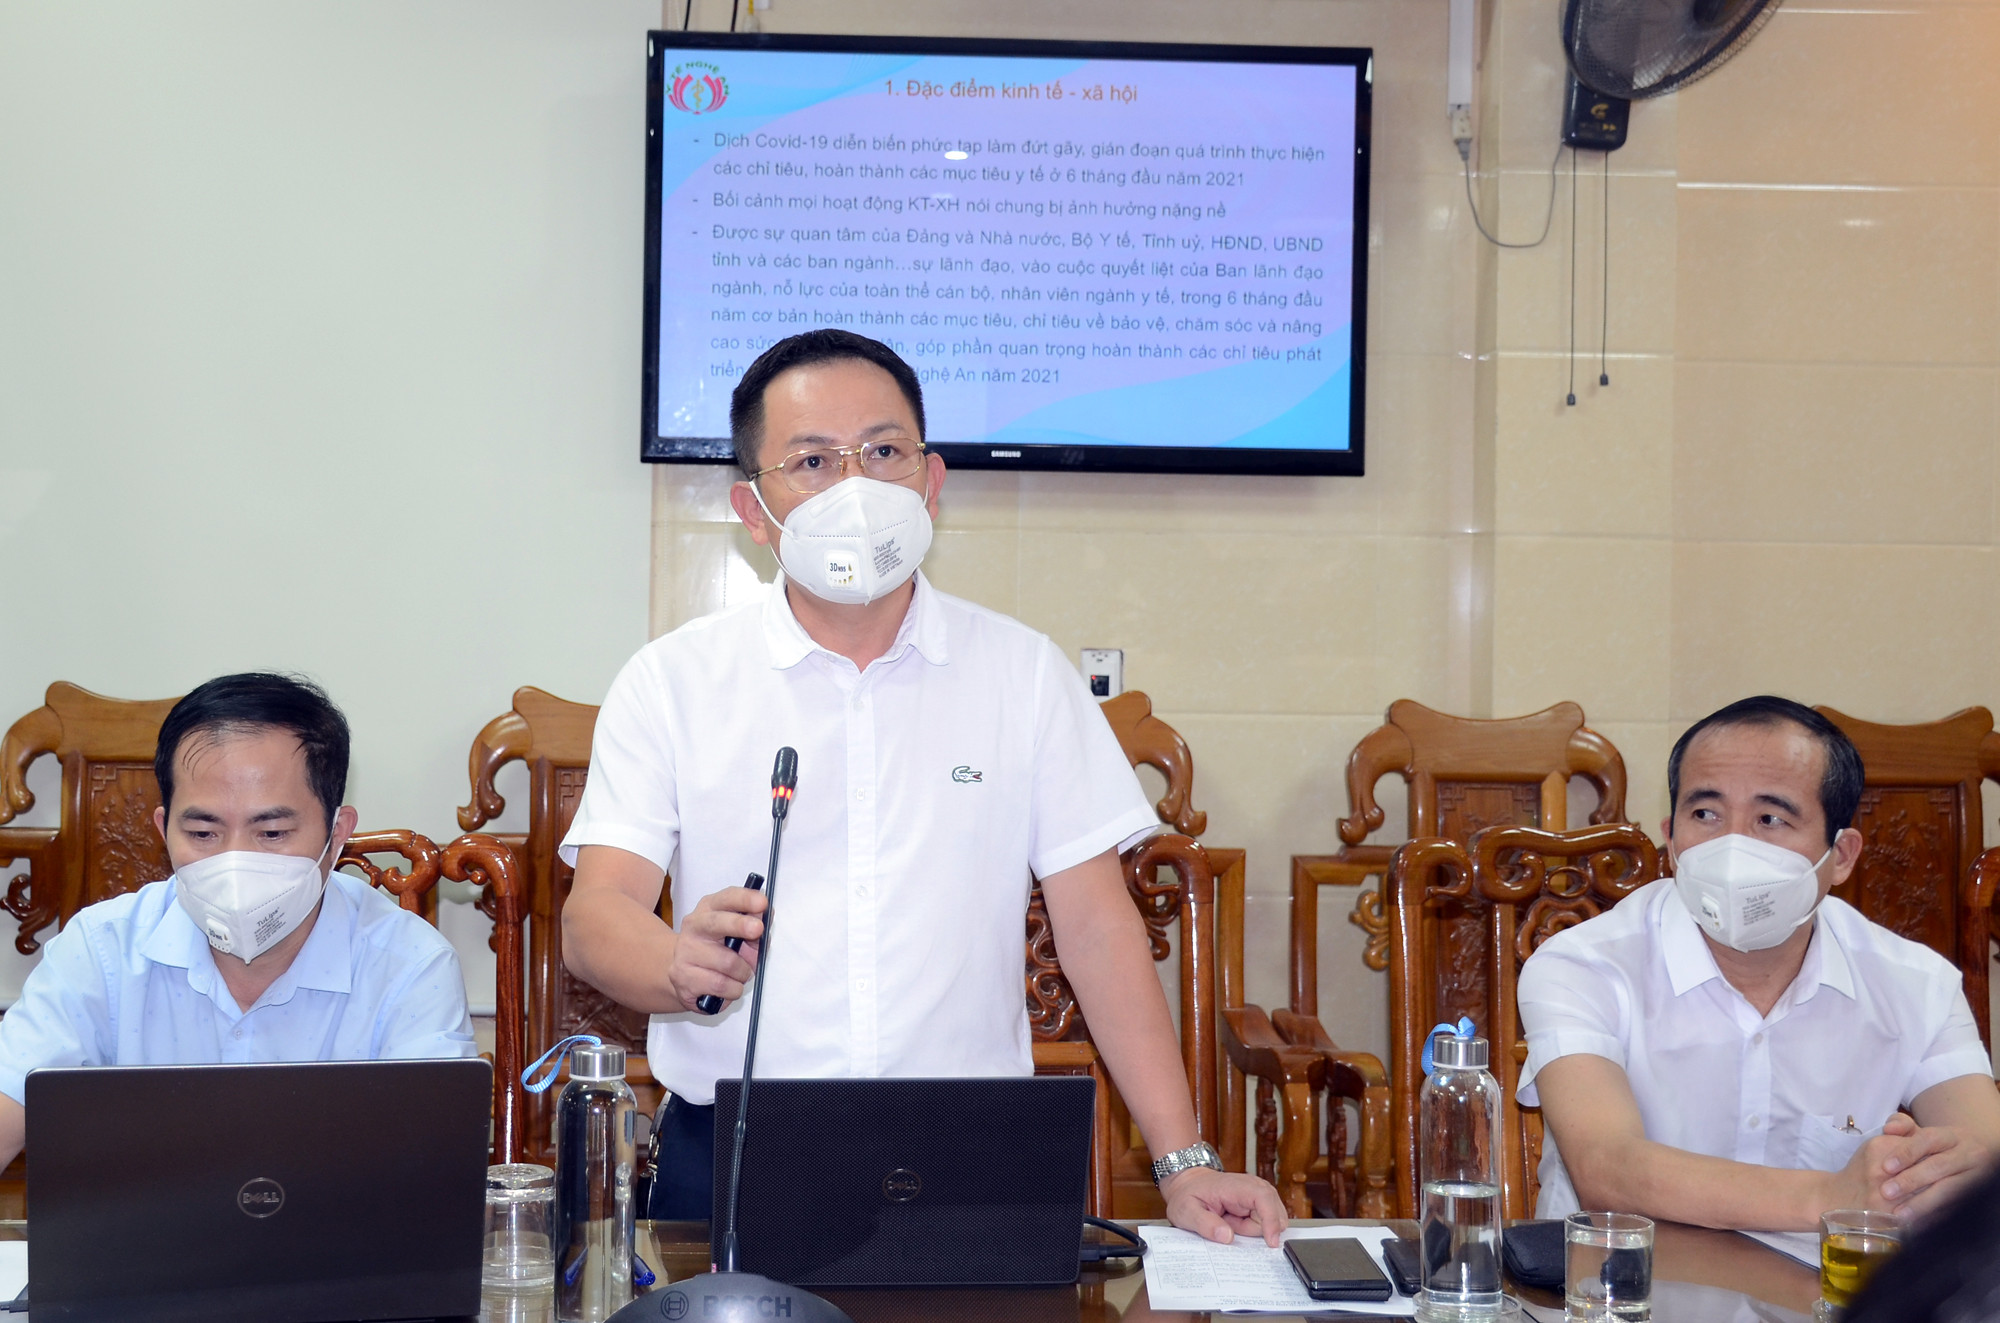 Tiến sĩ Nguyễn Hữu Lê - Phó Giám đốc Sở Y tế Nghệ An trình bày báo cáo sơ kết 6 tháng đầu năm 2021. Ảnh: Thành Chung